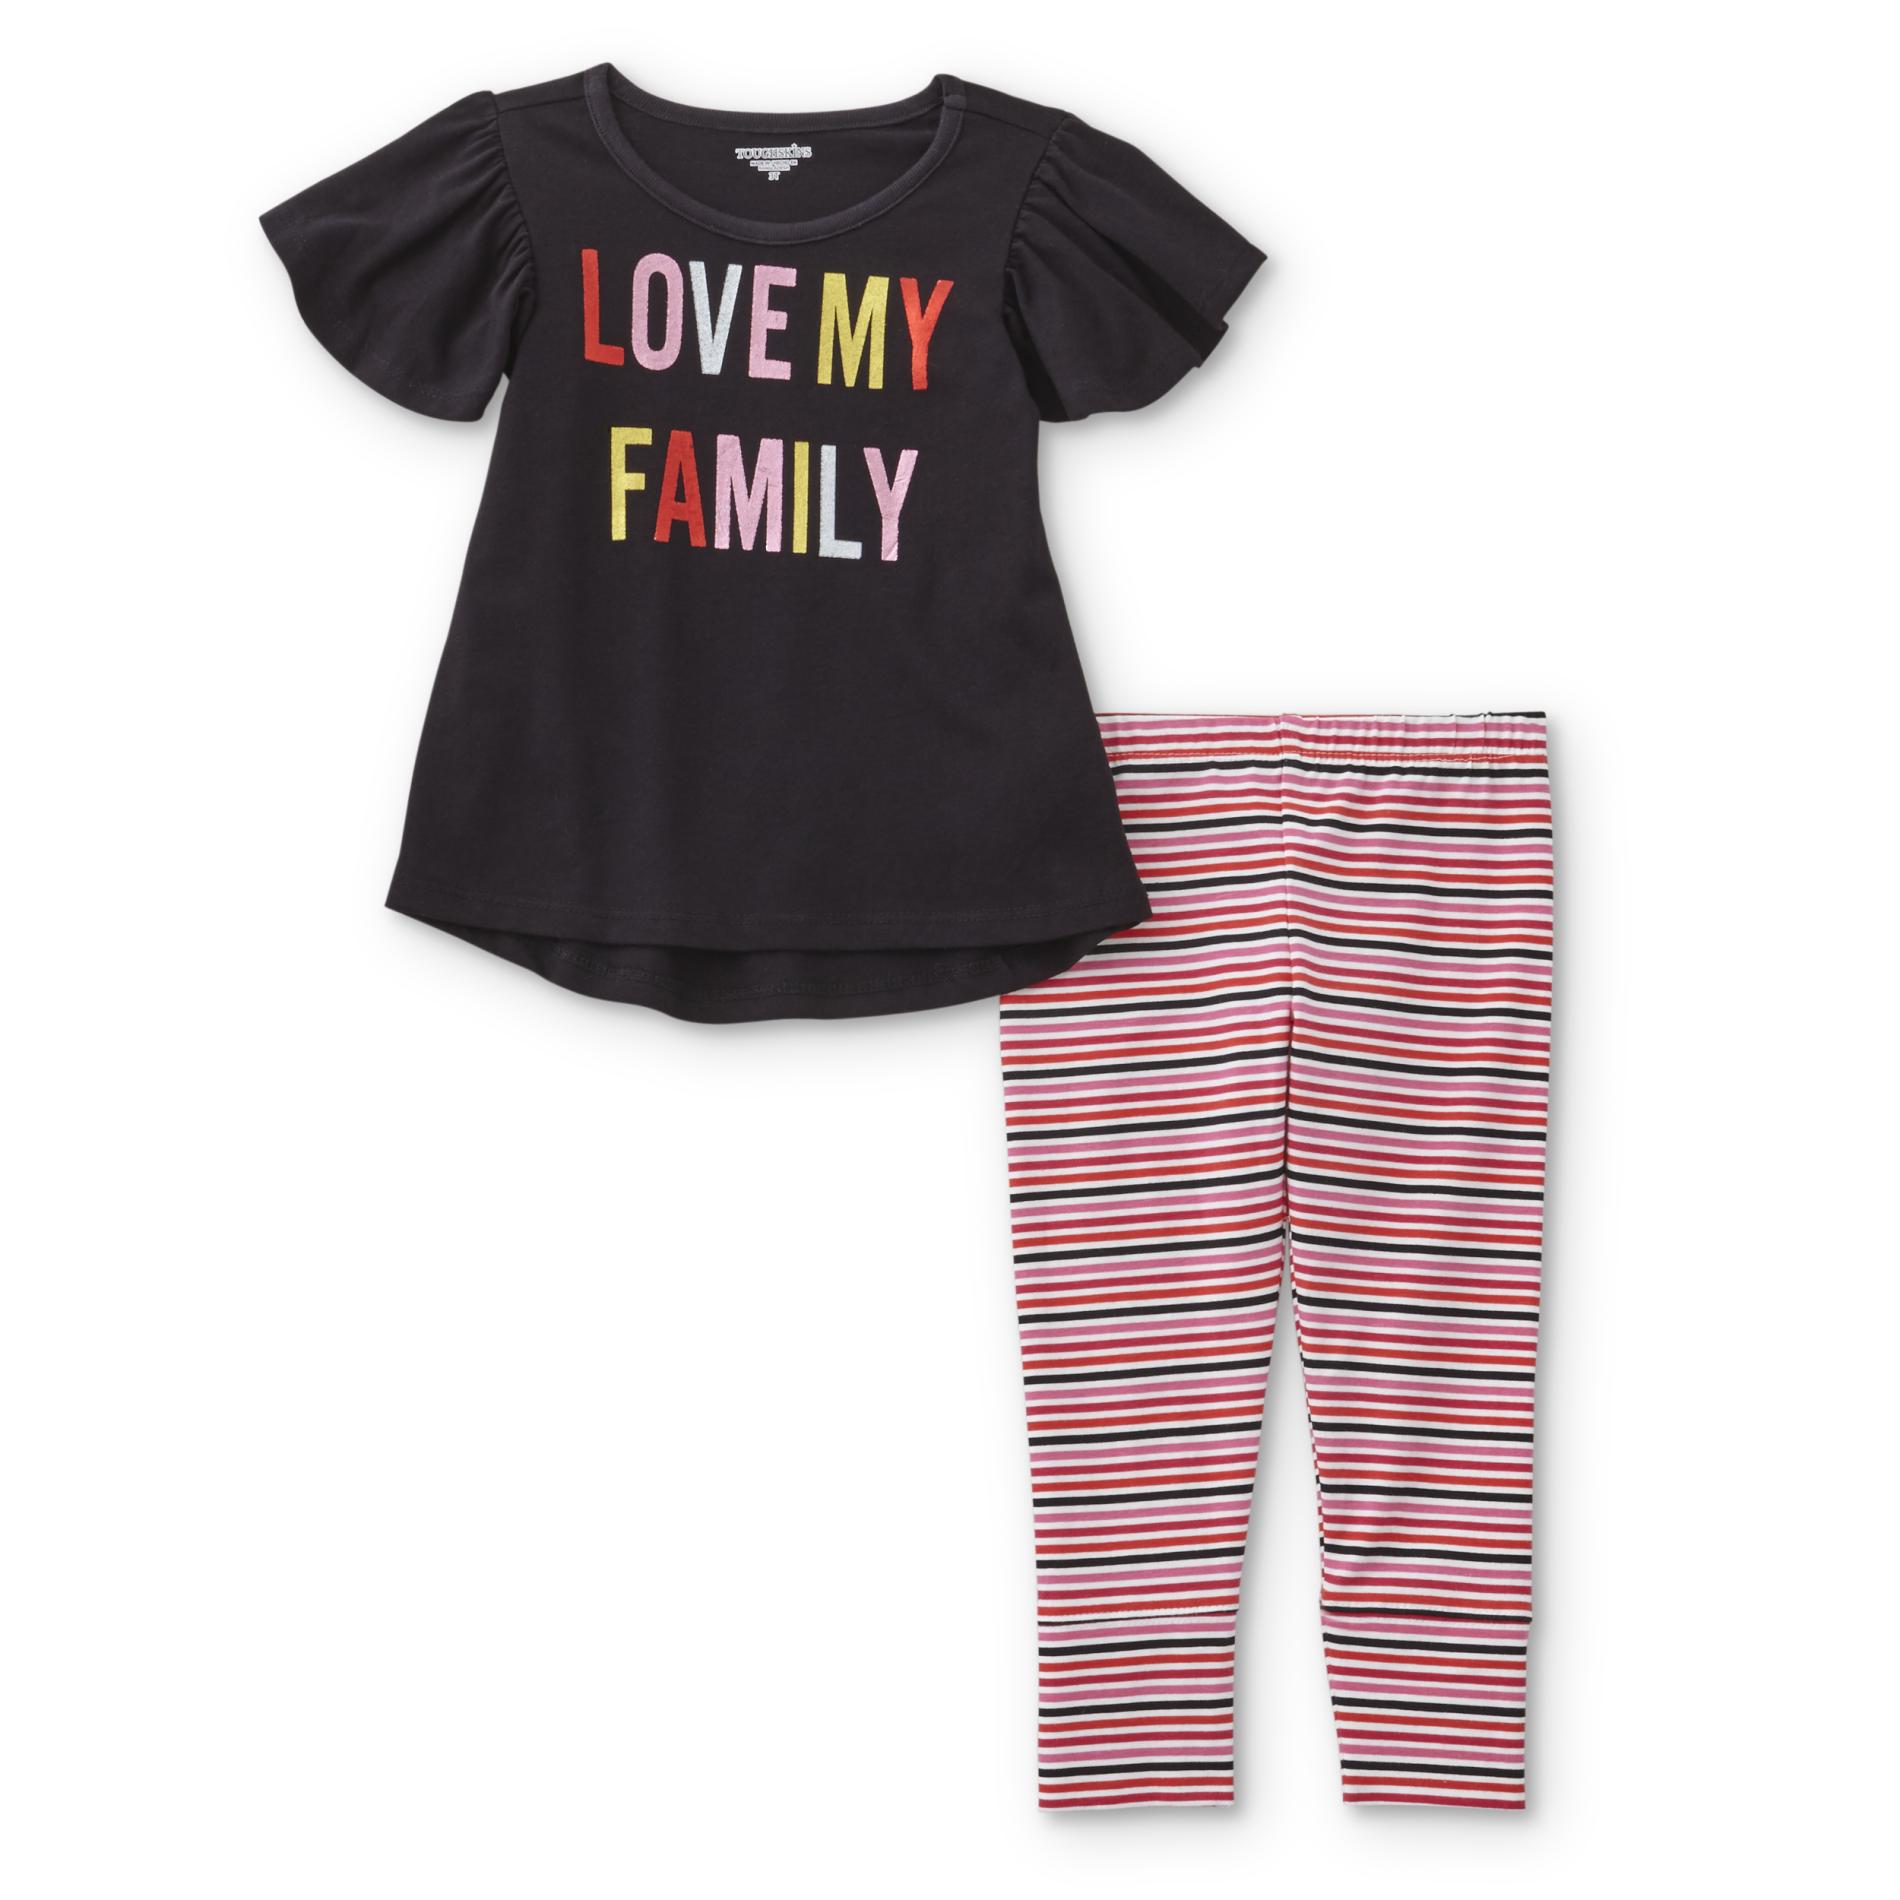 Toughskins Infant & Toddler Girls' Top & Leggings - Love My Family